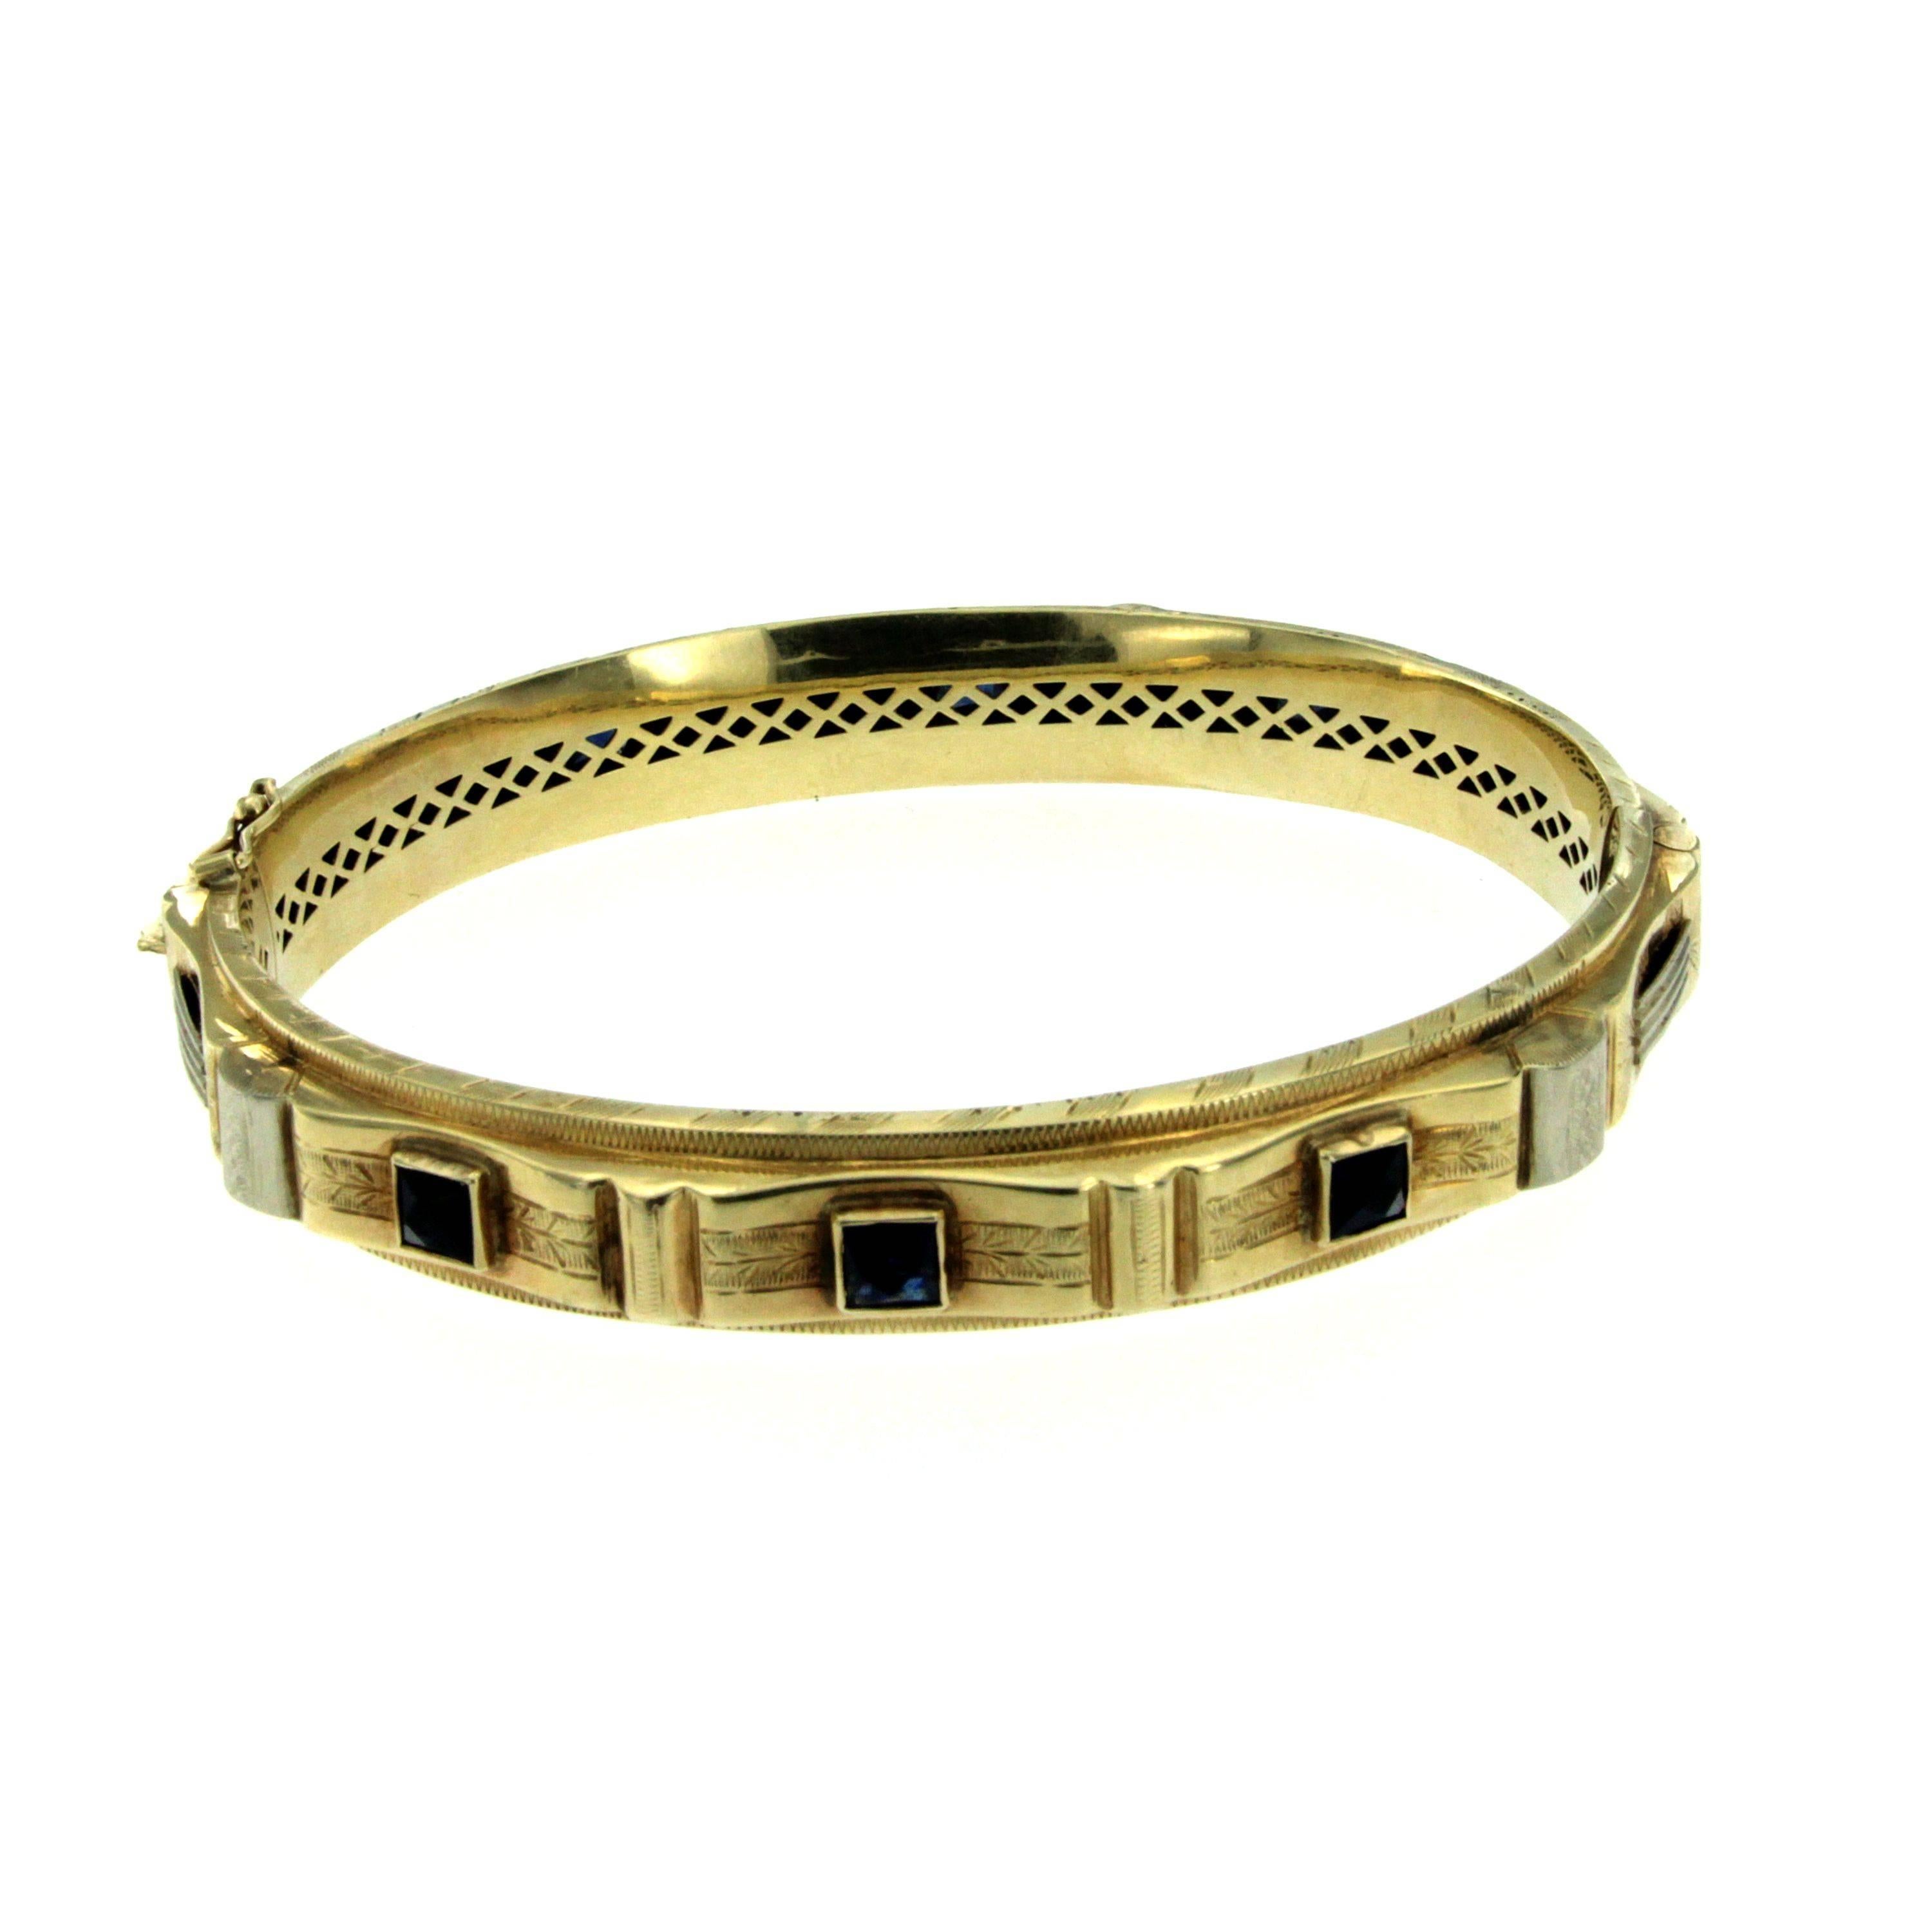 Un fabuleux bracelet bangle authentique orné d'environ 6,50 ct de pierres semi-précieuses, serties en or jaune 12k.
Poinçonné de l'emblème fasciste licteur (Fasces Lictorii), vers 1930

Le bracelet a une largeur de 1 cm (0,39 in) et un diamètre